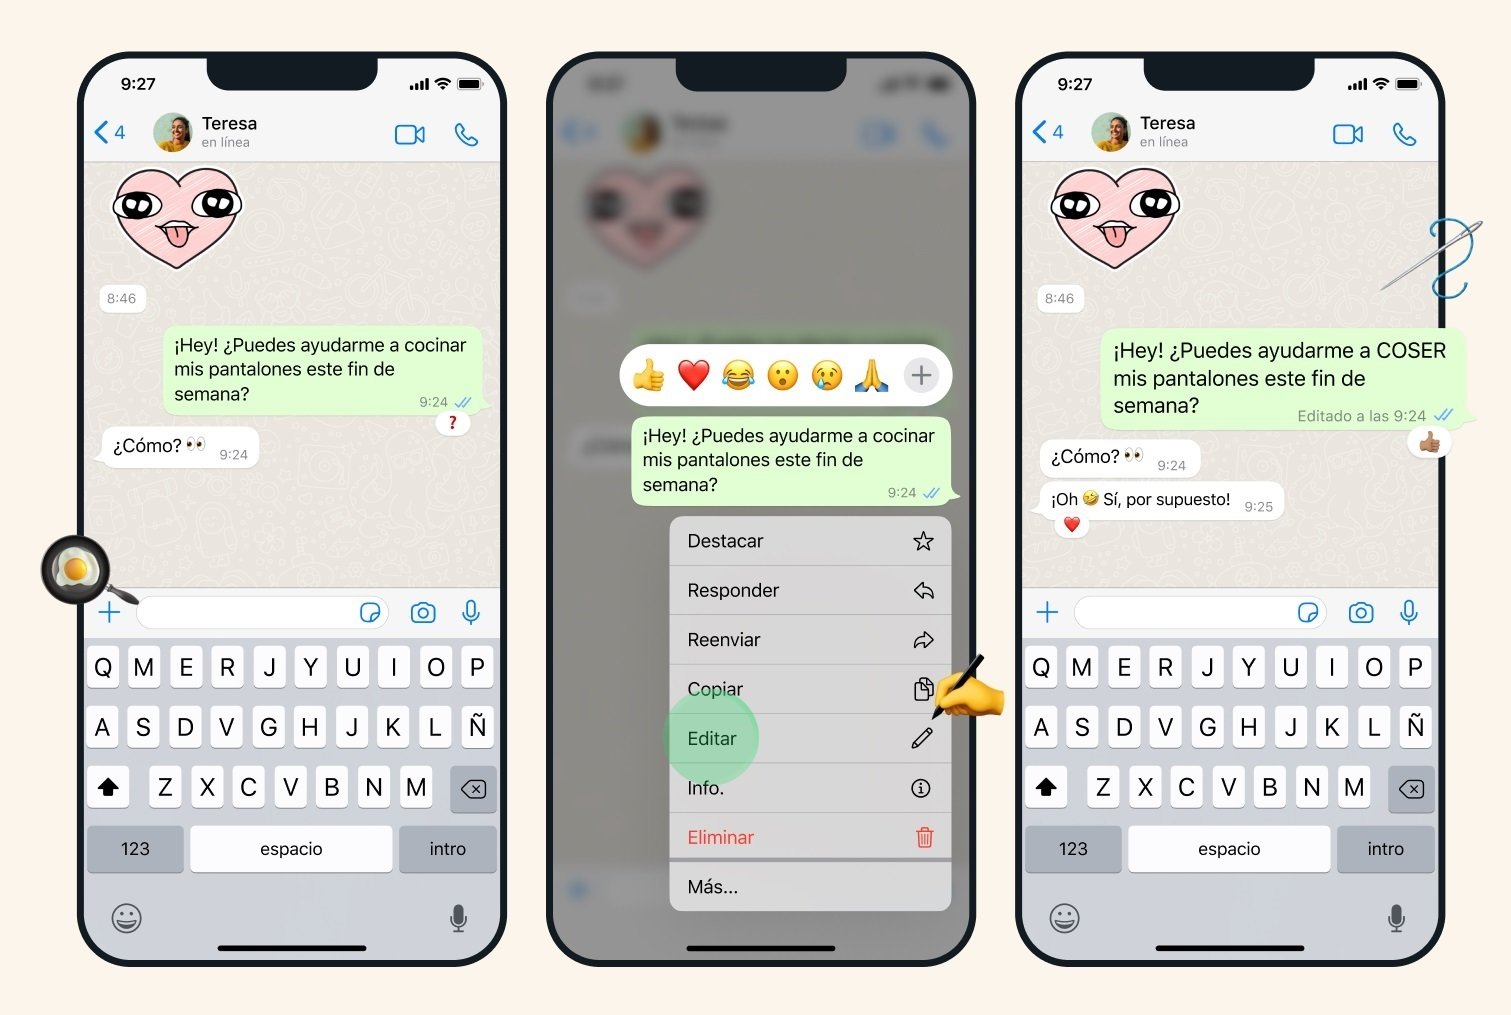 WhatsApp ja permet editar els missatges enviats: així pots fer-ho